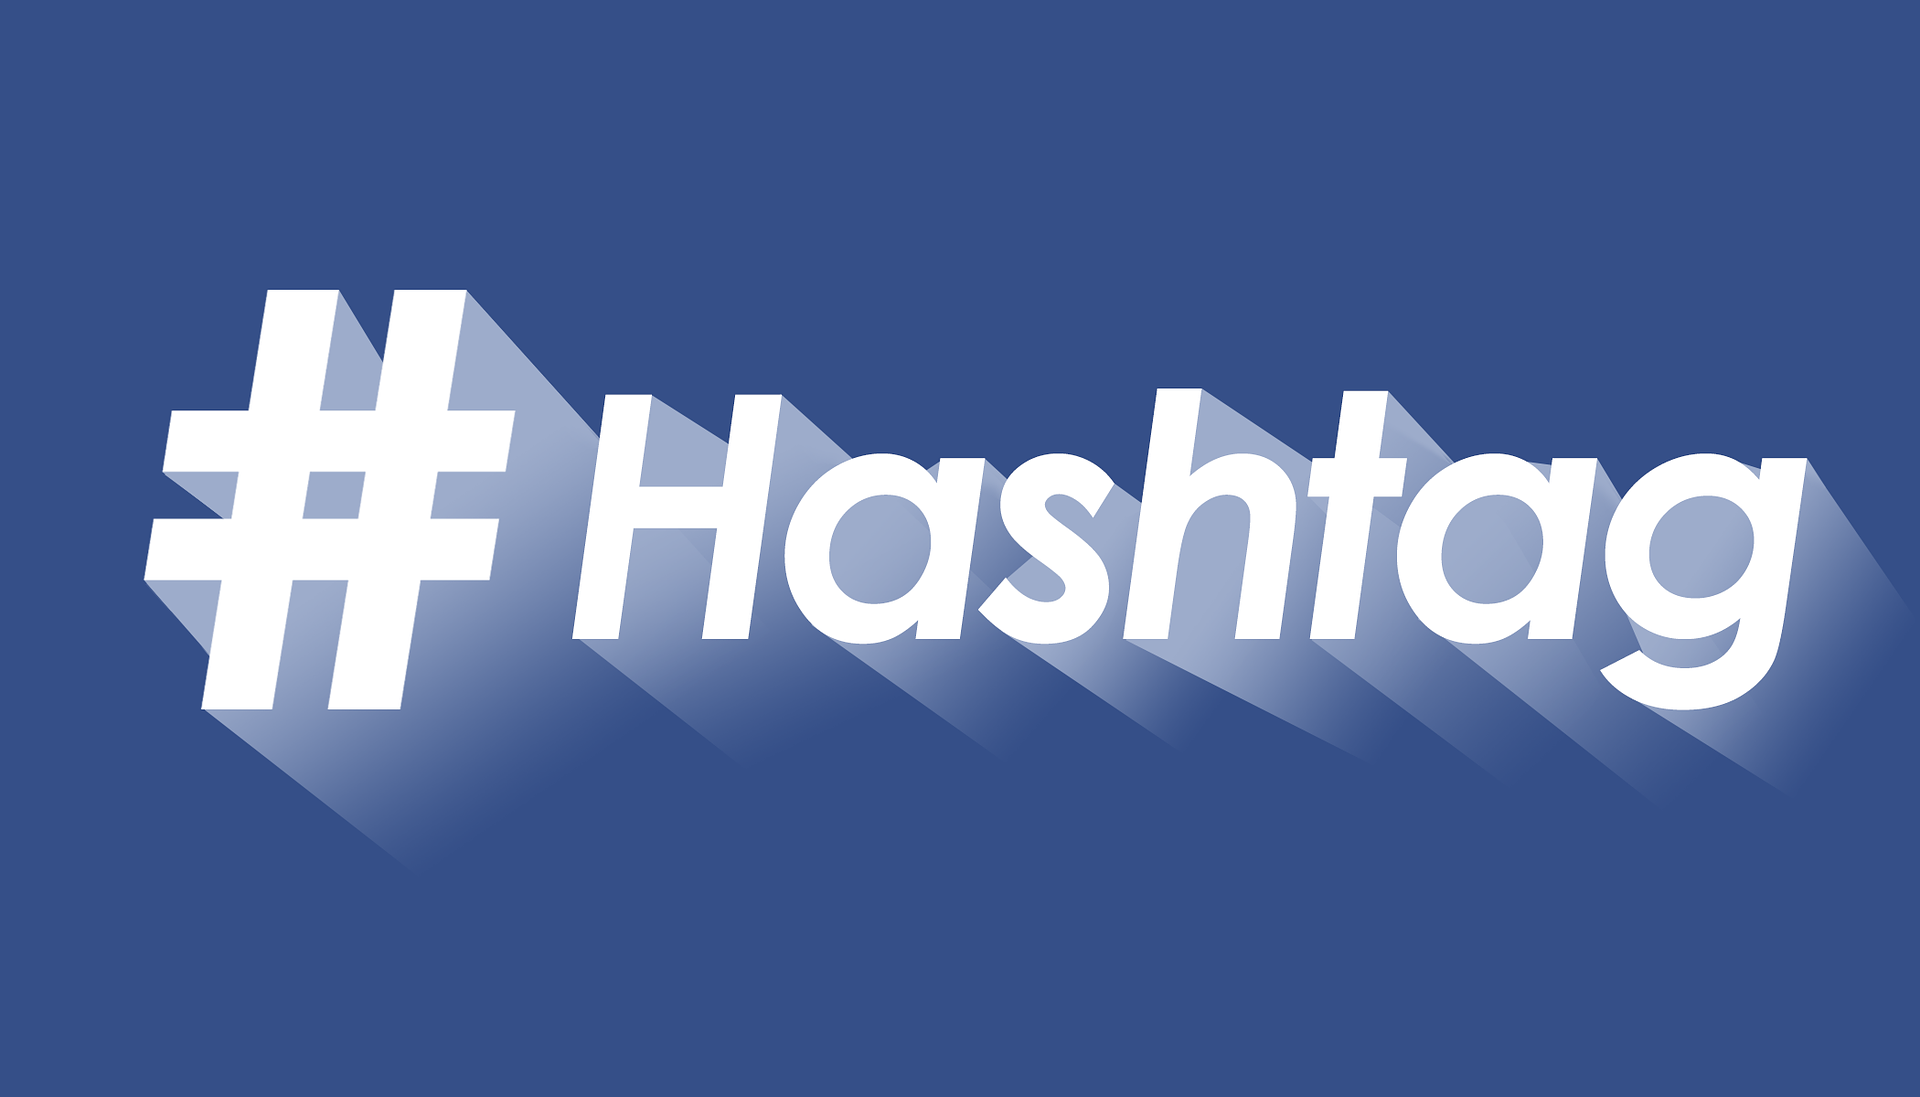 Cover Come usare gli Hashtag nel modo corretto per promuovere i tuoi eventi